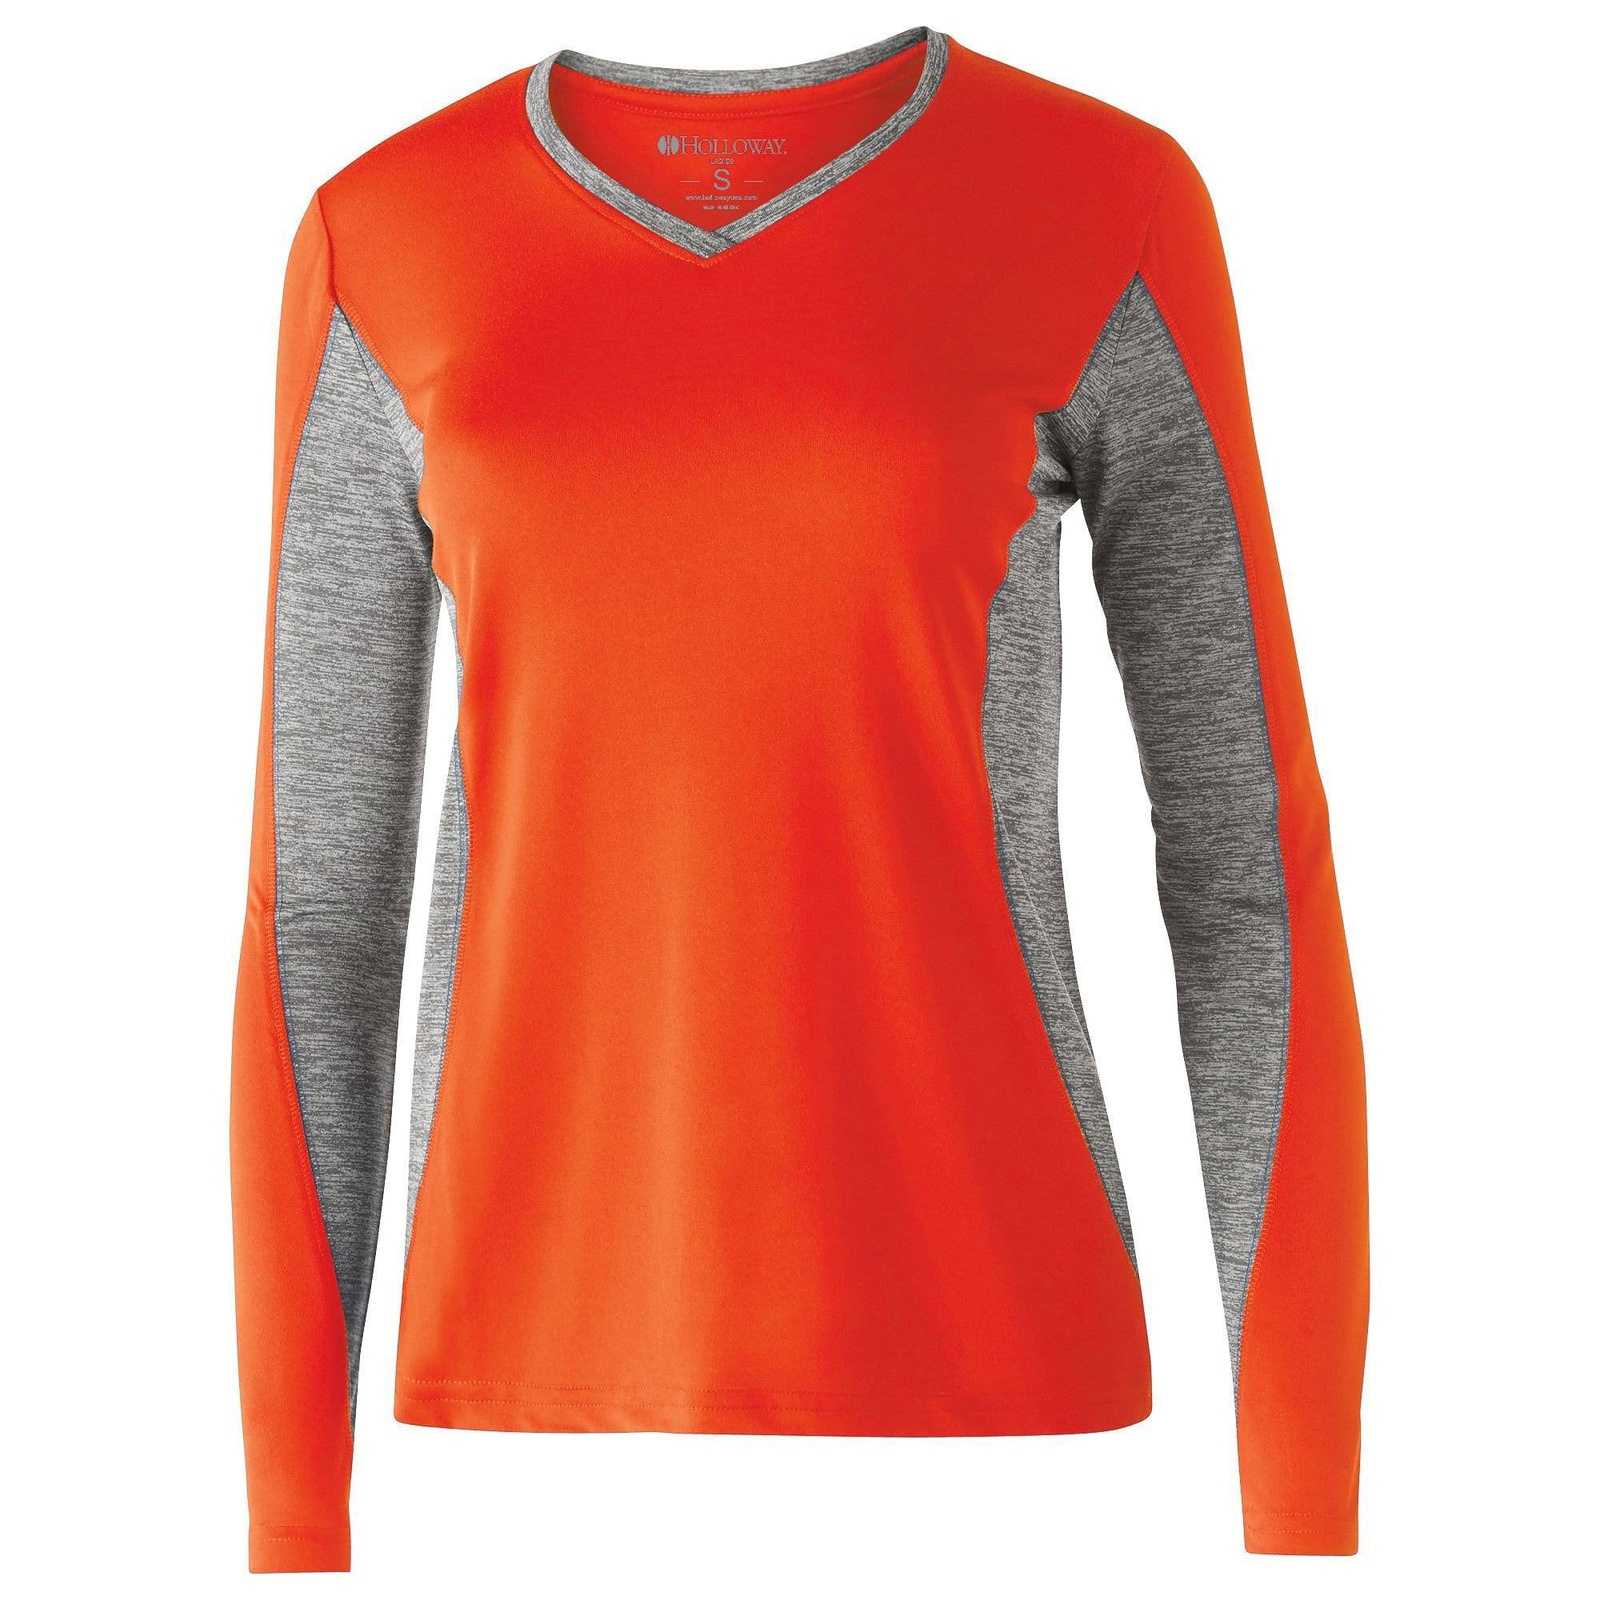 Holloway 222727 Ladies' Stellar Shirt - Orange Graphite Heather - HIT a Double